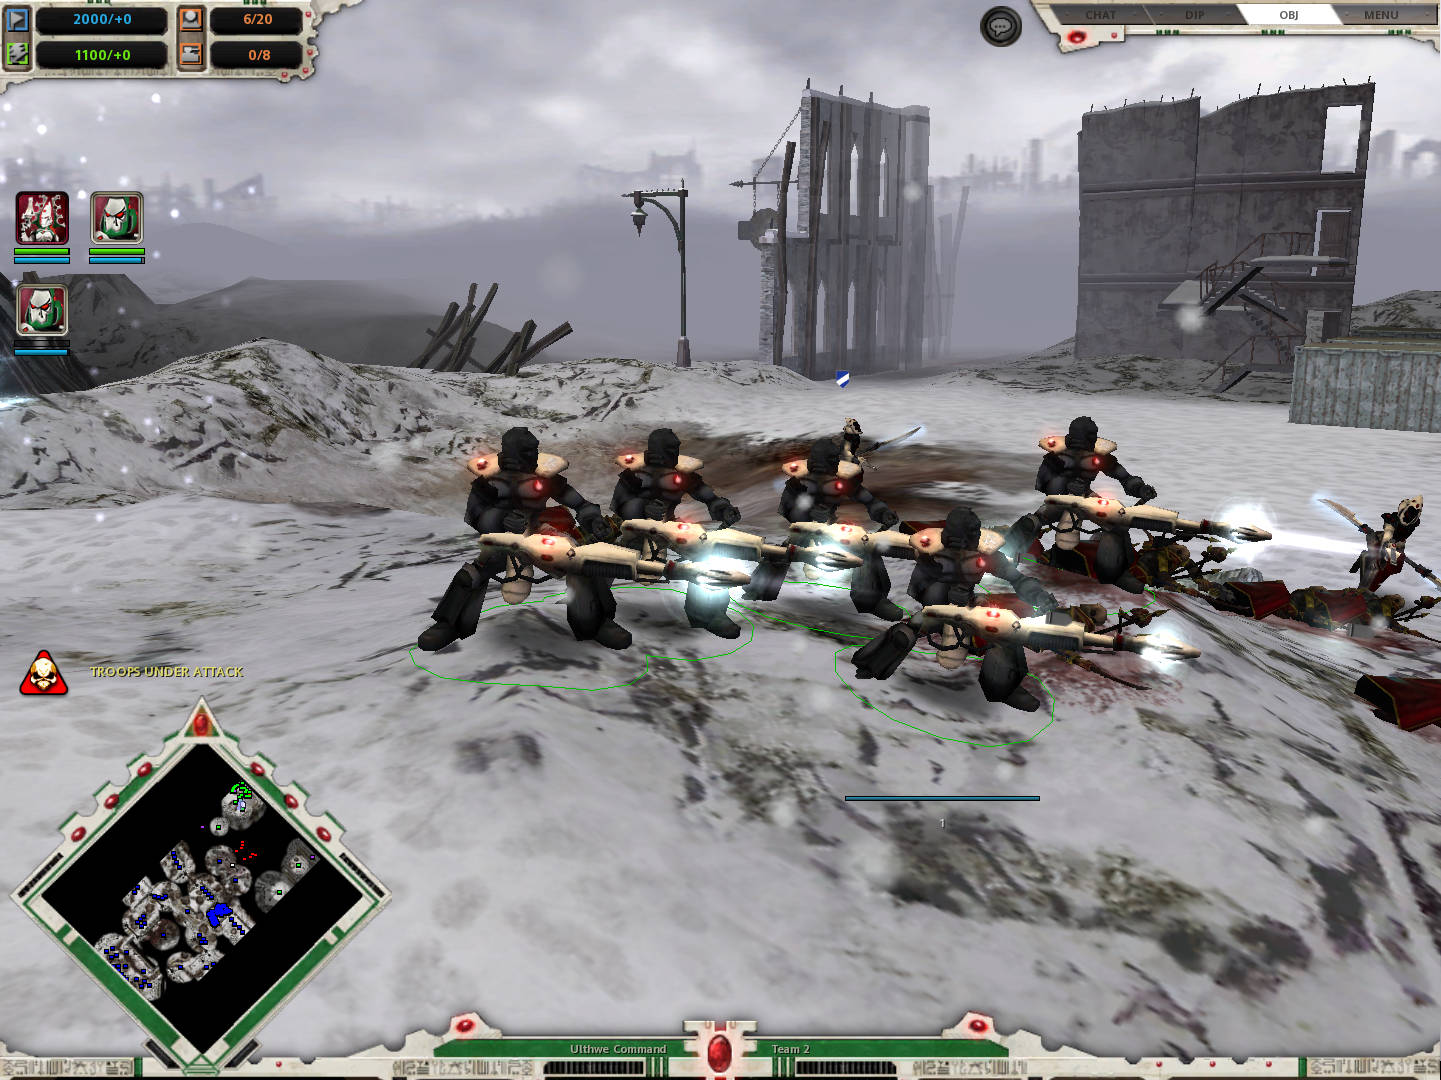 Eldar Dark Reaper squad during attack